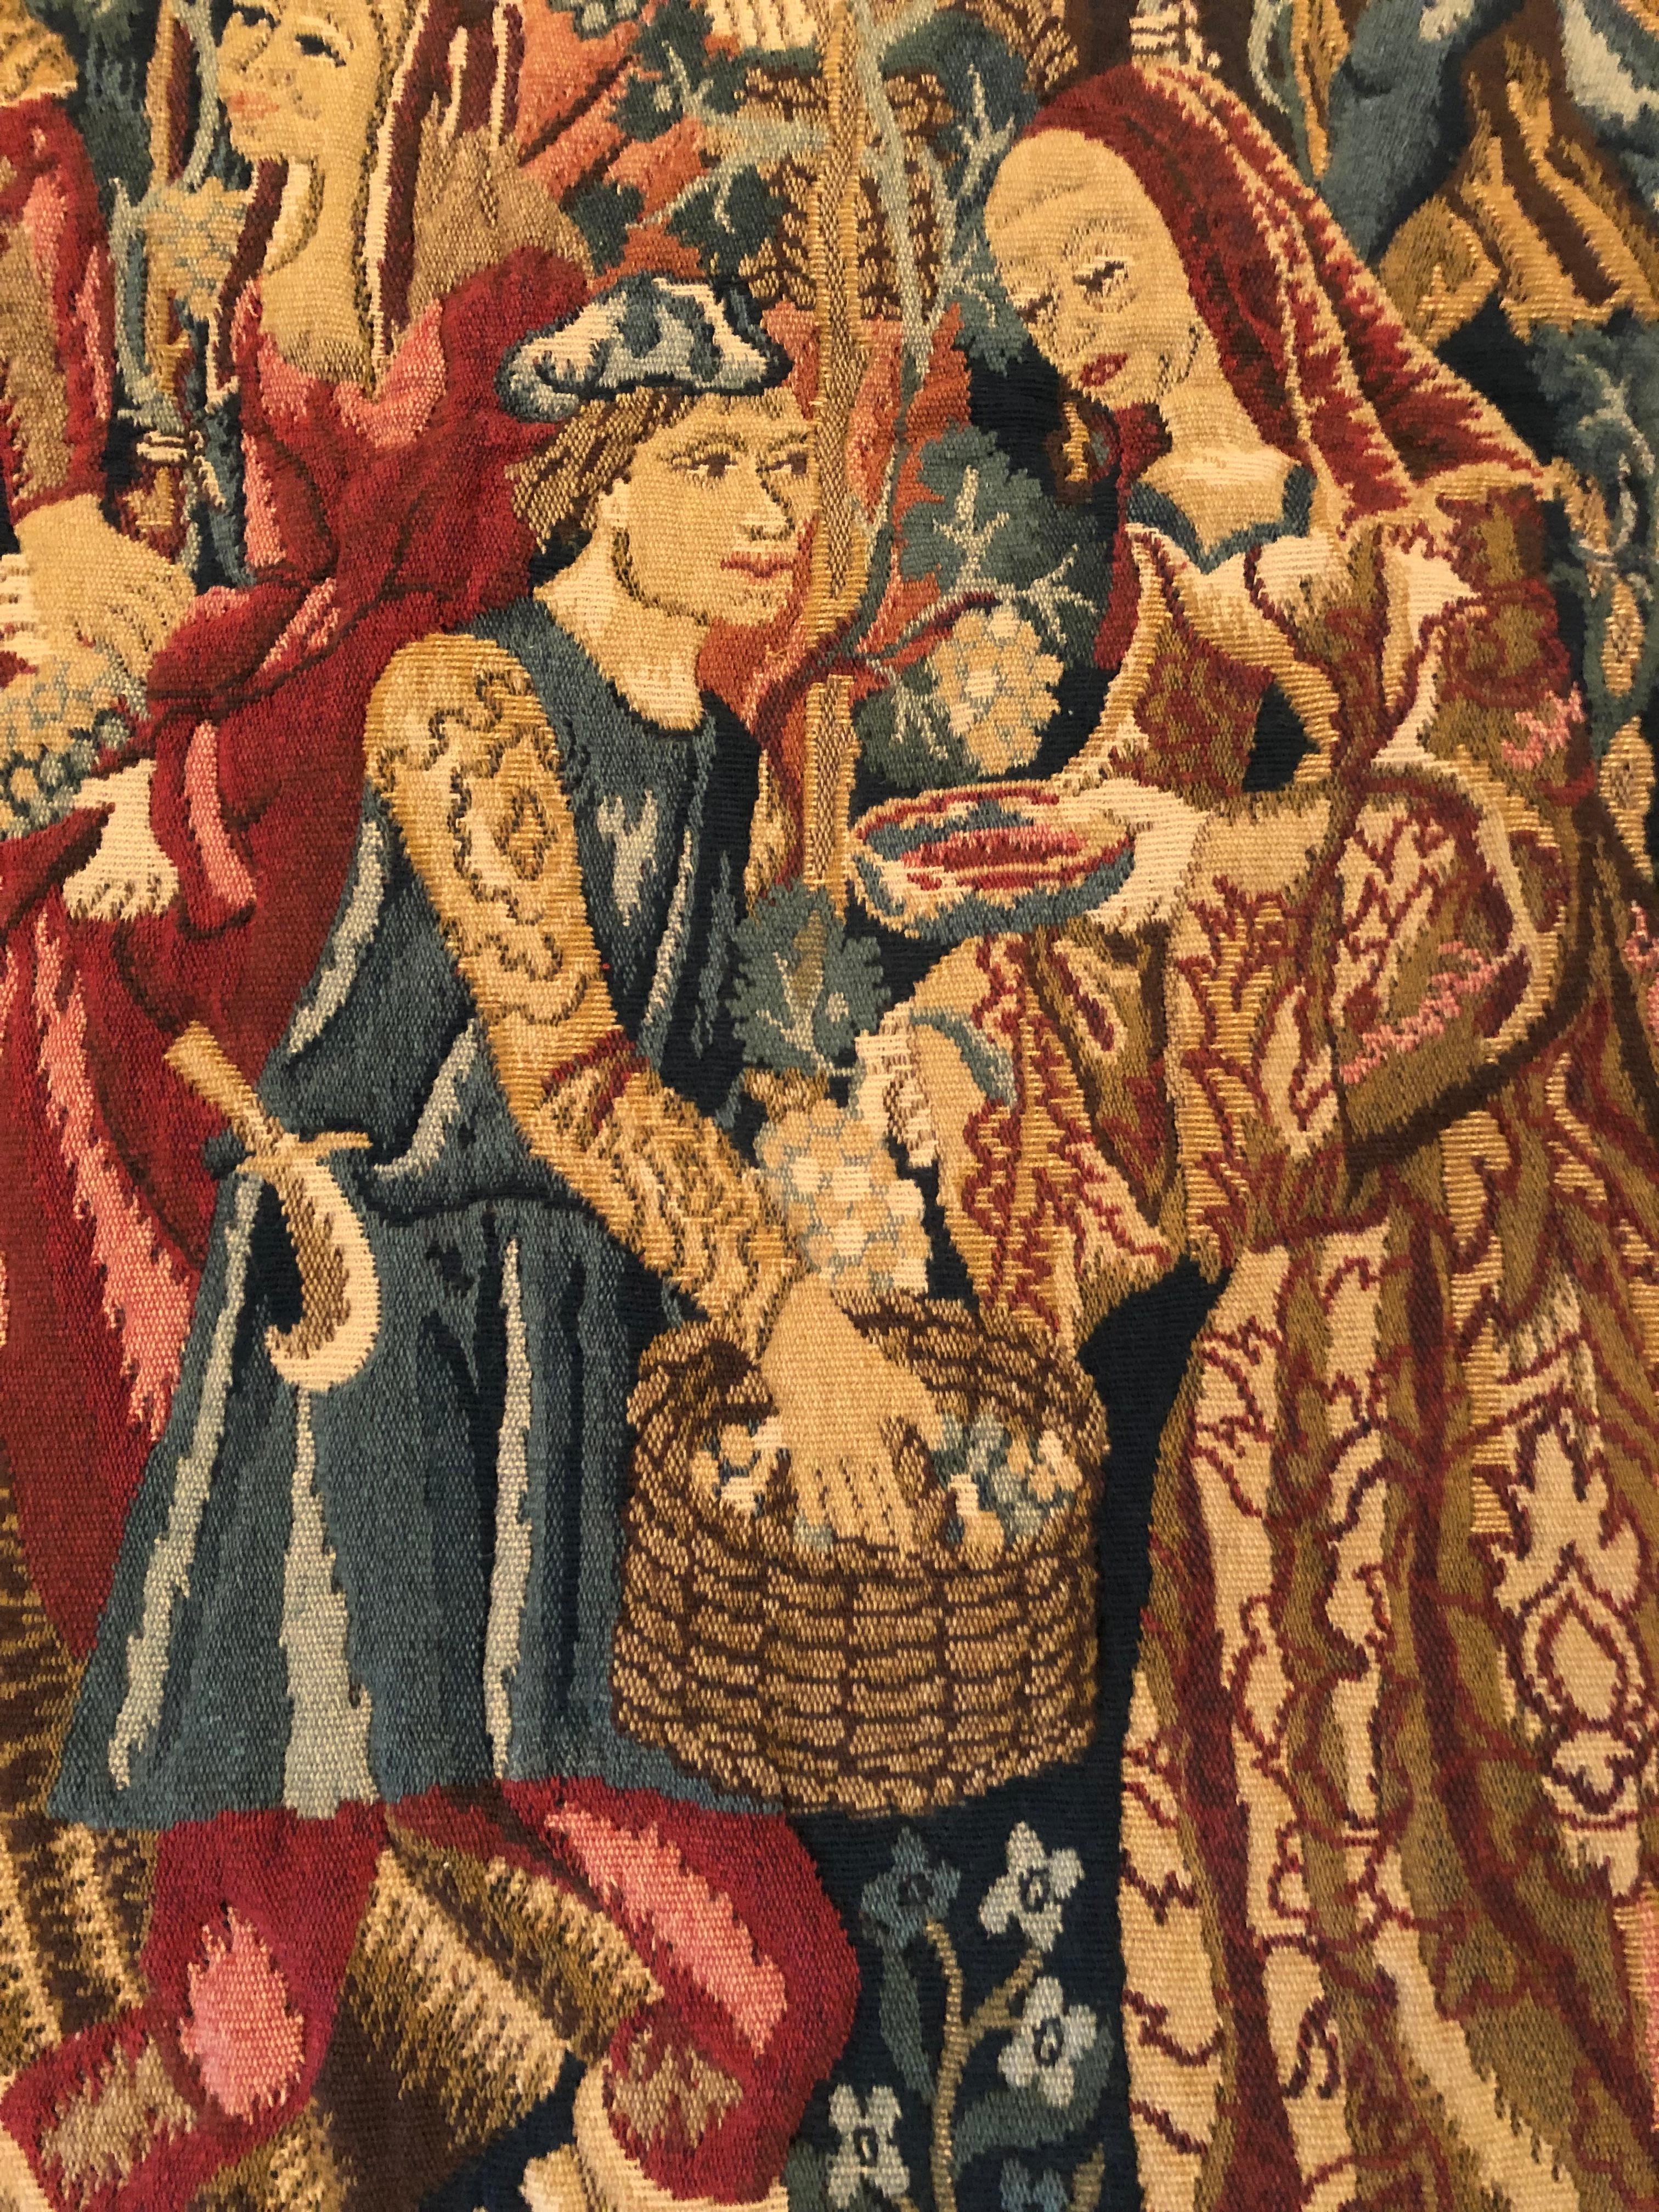 Wunderschöner, farbenprächtiger und detailliert gewebter Wandteppich, der eine Reproduktion eines französischen Wandteppichs aus dem 14. Jahrhundert darstellt, auf dem zeitgenössisch gekleidete Figuren bei der Weinlese zu sehen sind.   Hergestellt